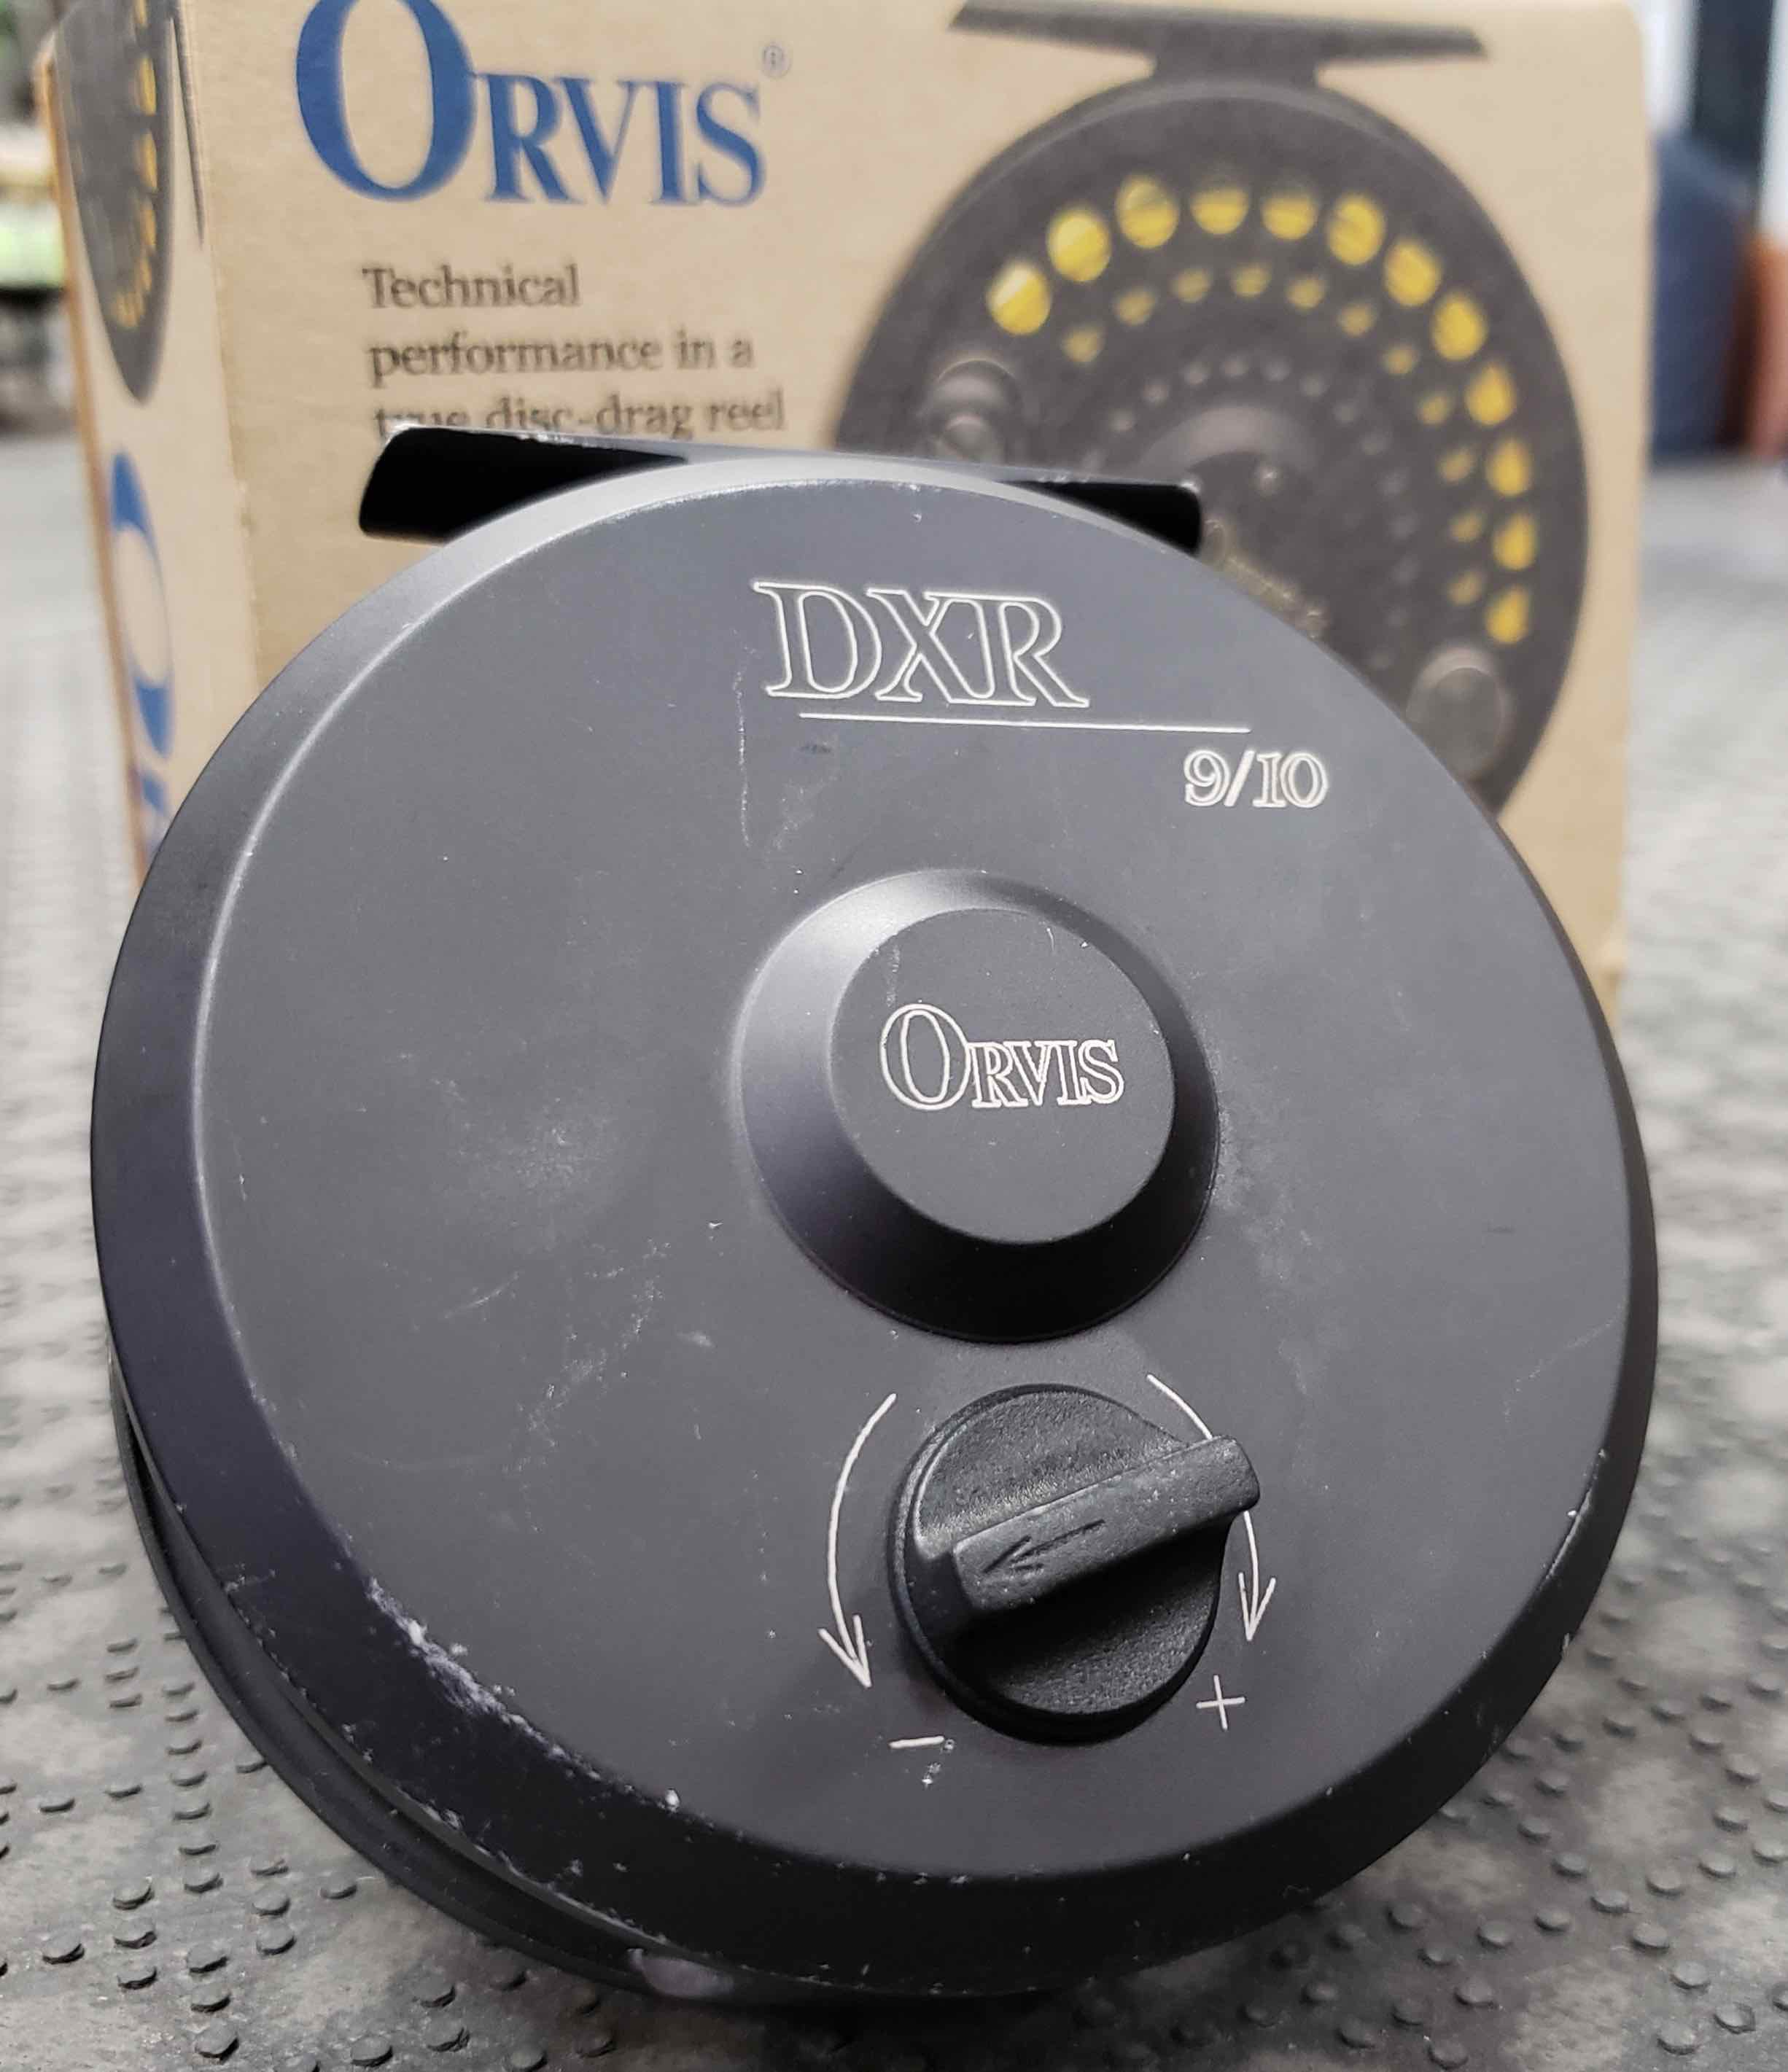 Orvis DXR 9/10 Fly Reel - GOOD SHAPE!